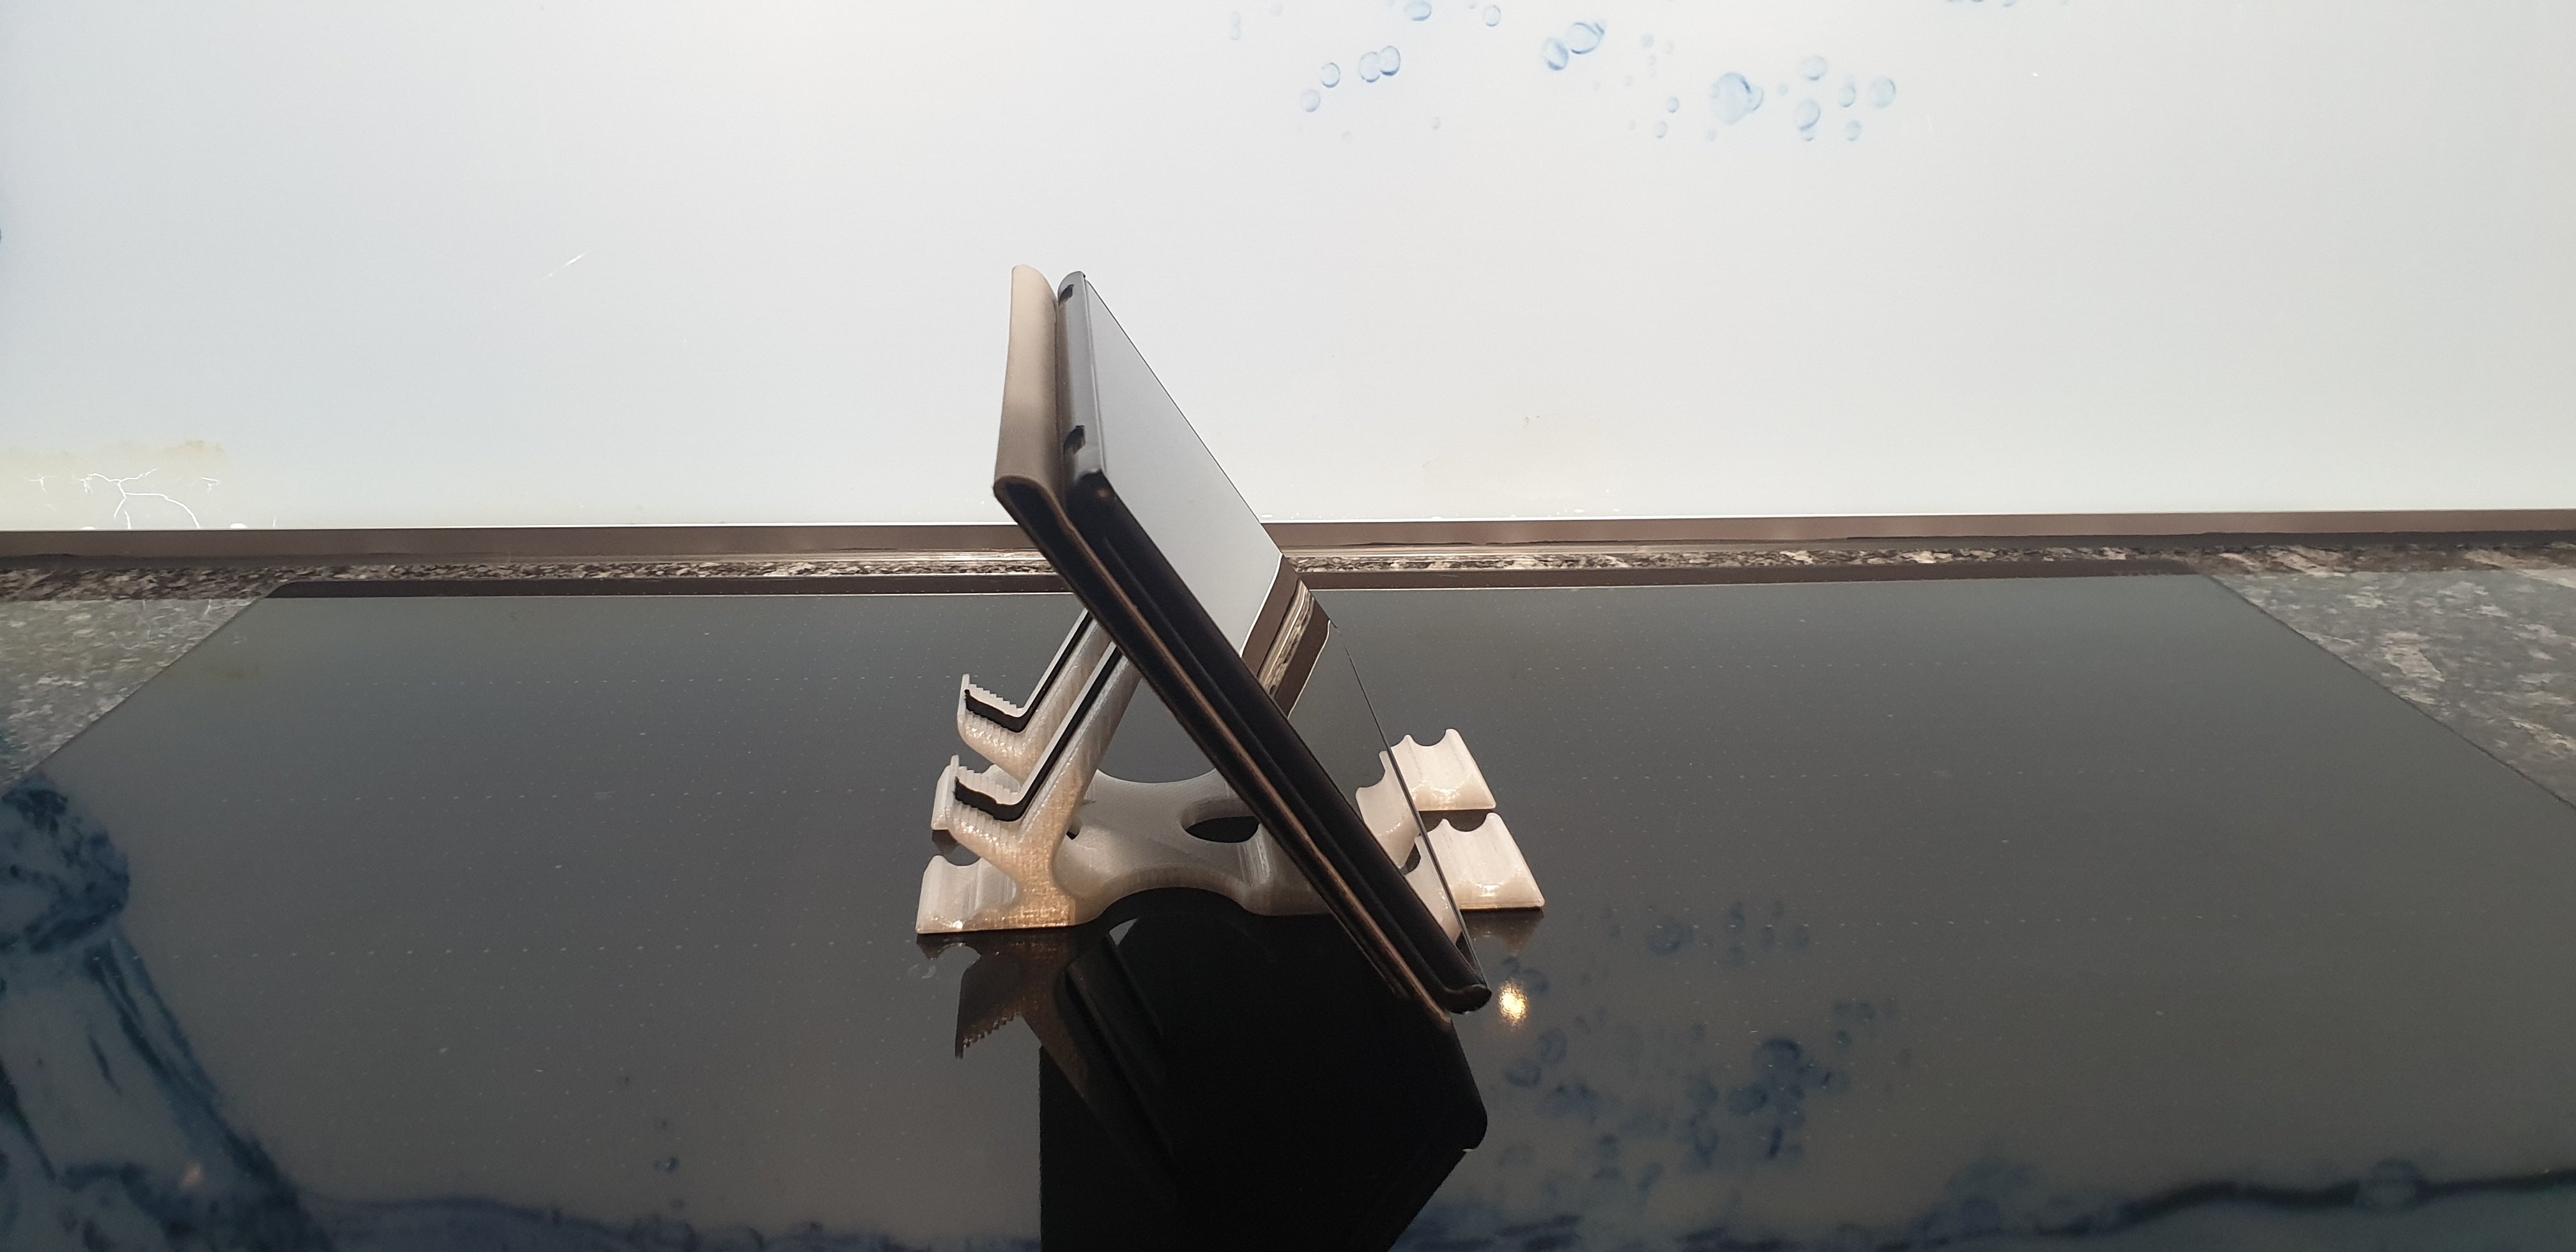 Smartphone-Ständer V17 mit Antirutsch